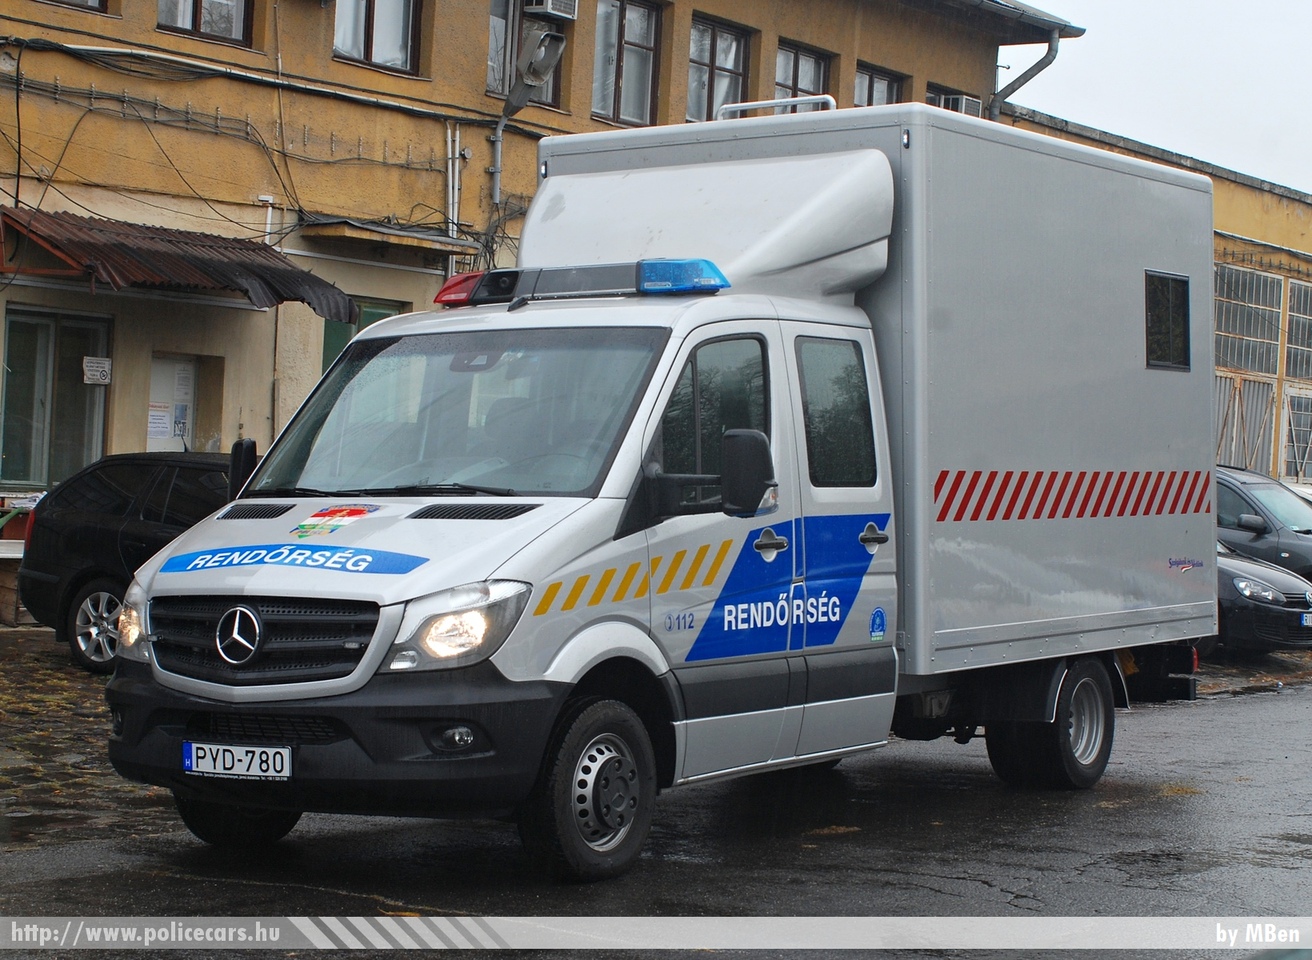 Mercedes Sprinter II facelift, fotó: MBen
Keywords: rendőrség rendőr rendőrautó magyar Magyarország hungarian Hungary police policecar PYD-780